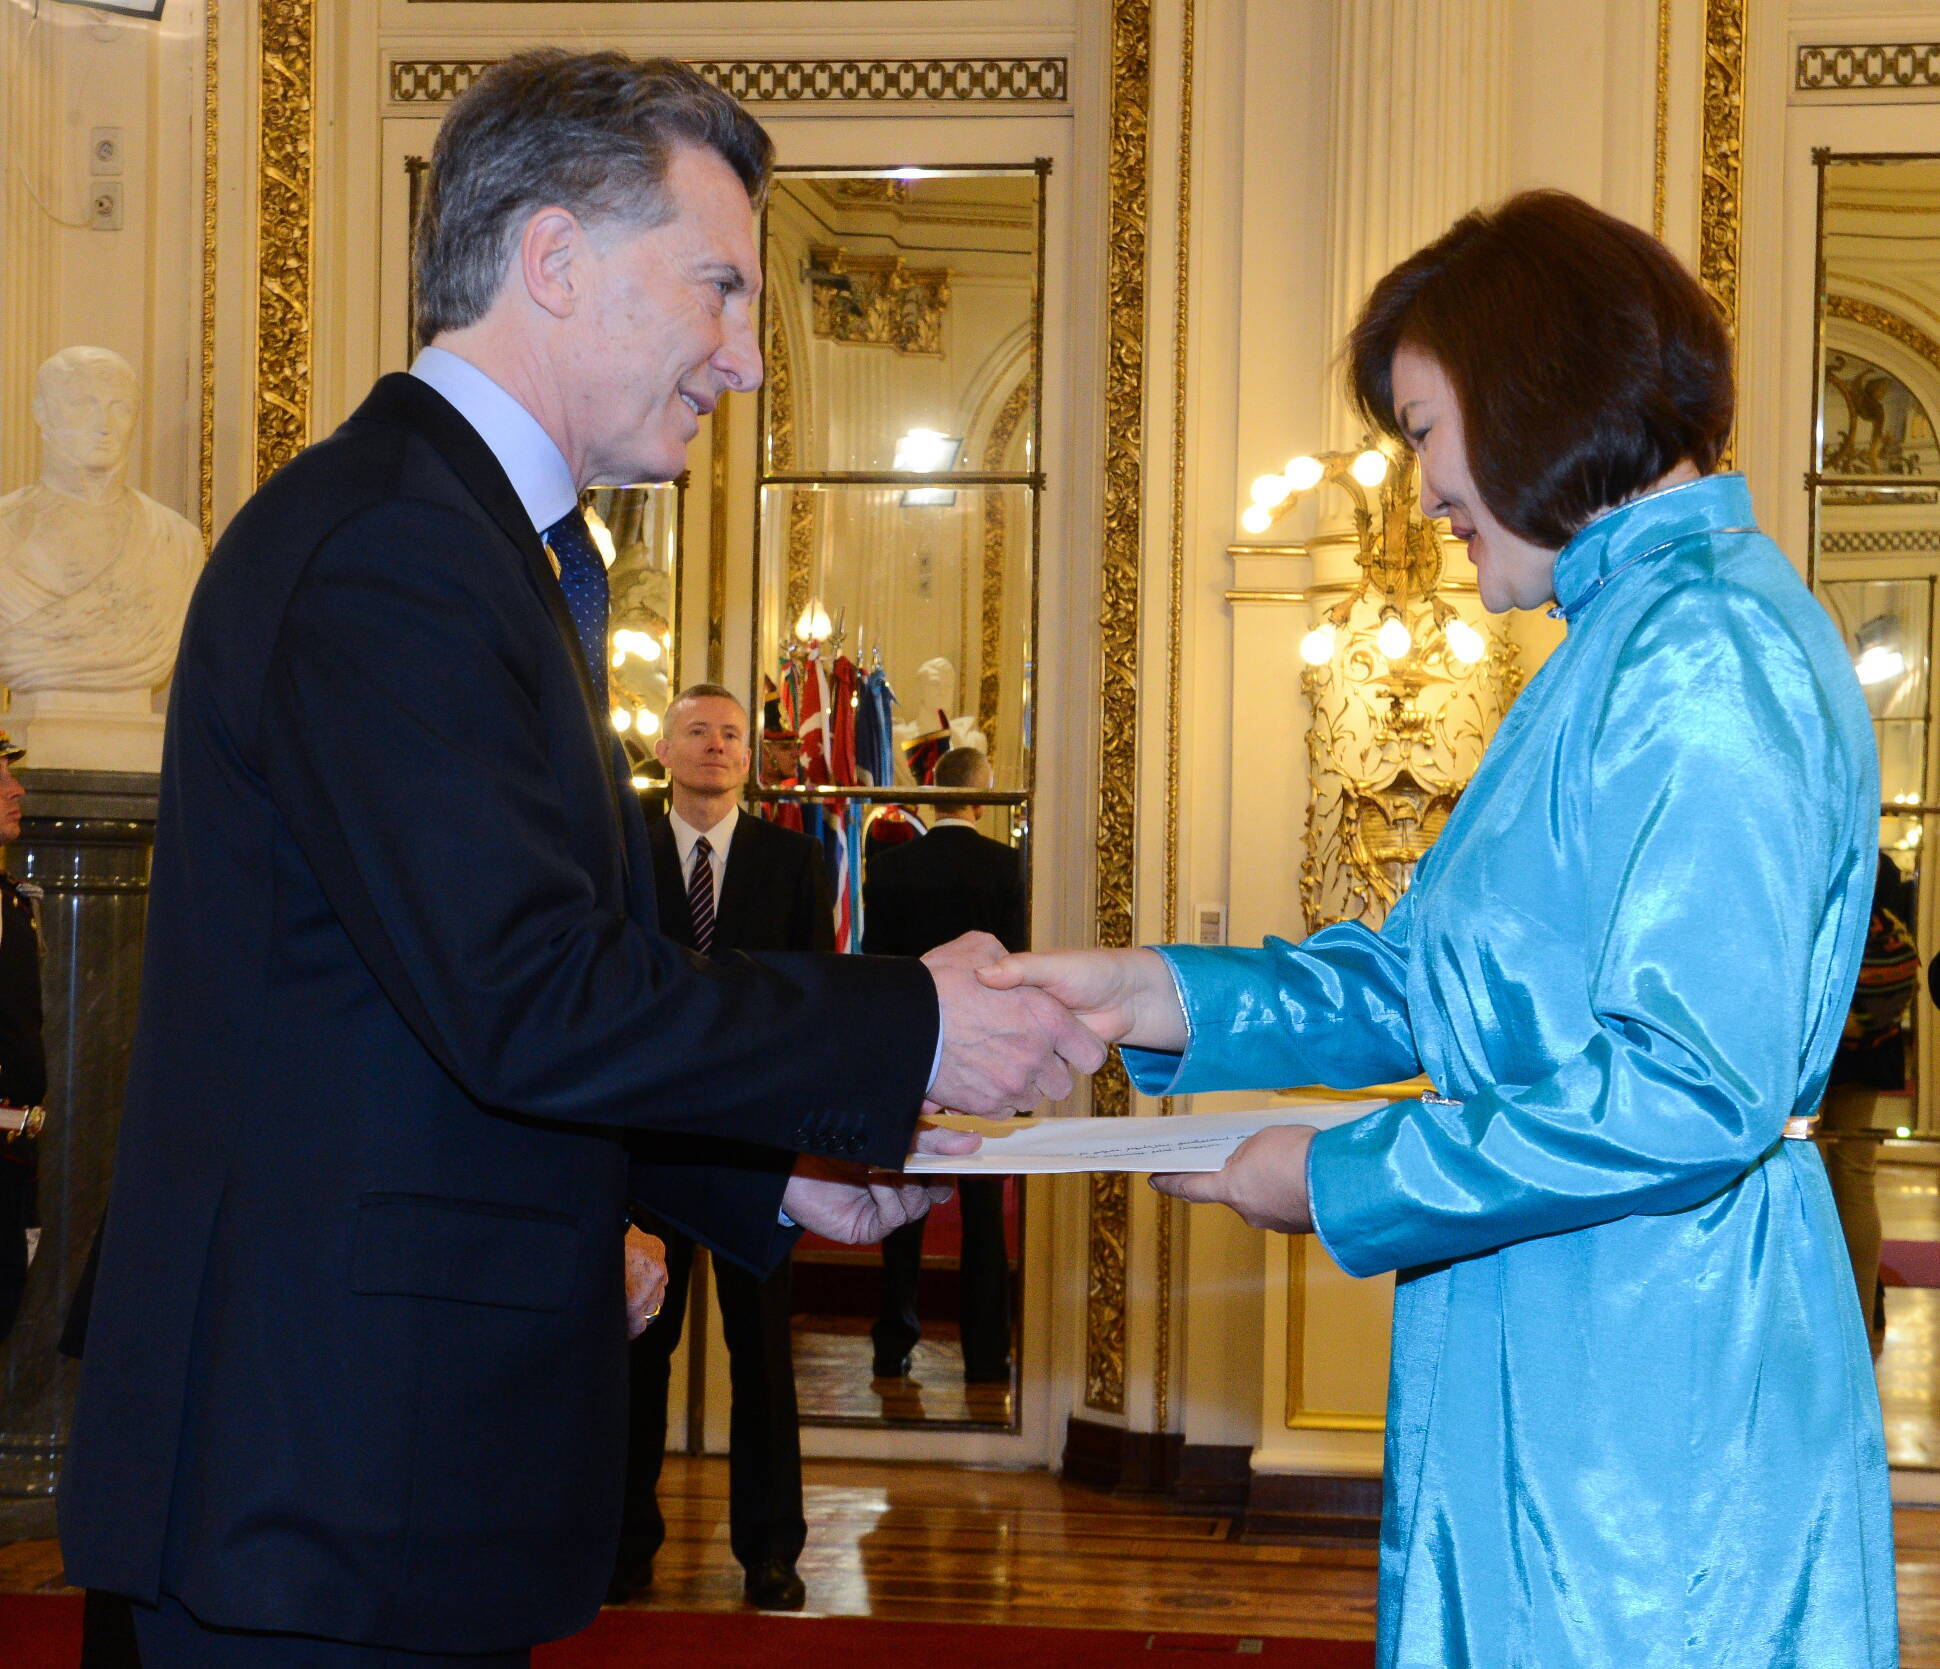 El presidente Macri recibió las cartas credenciales de nueve embajadores